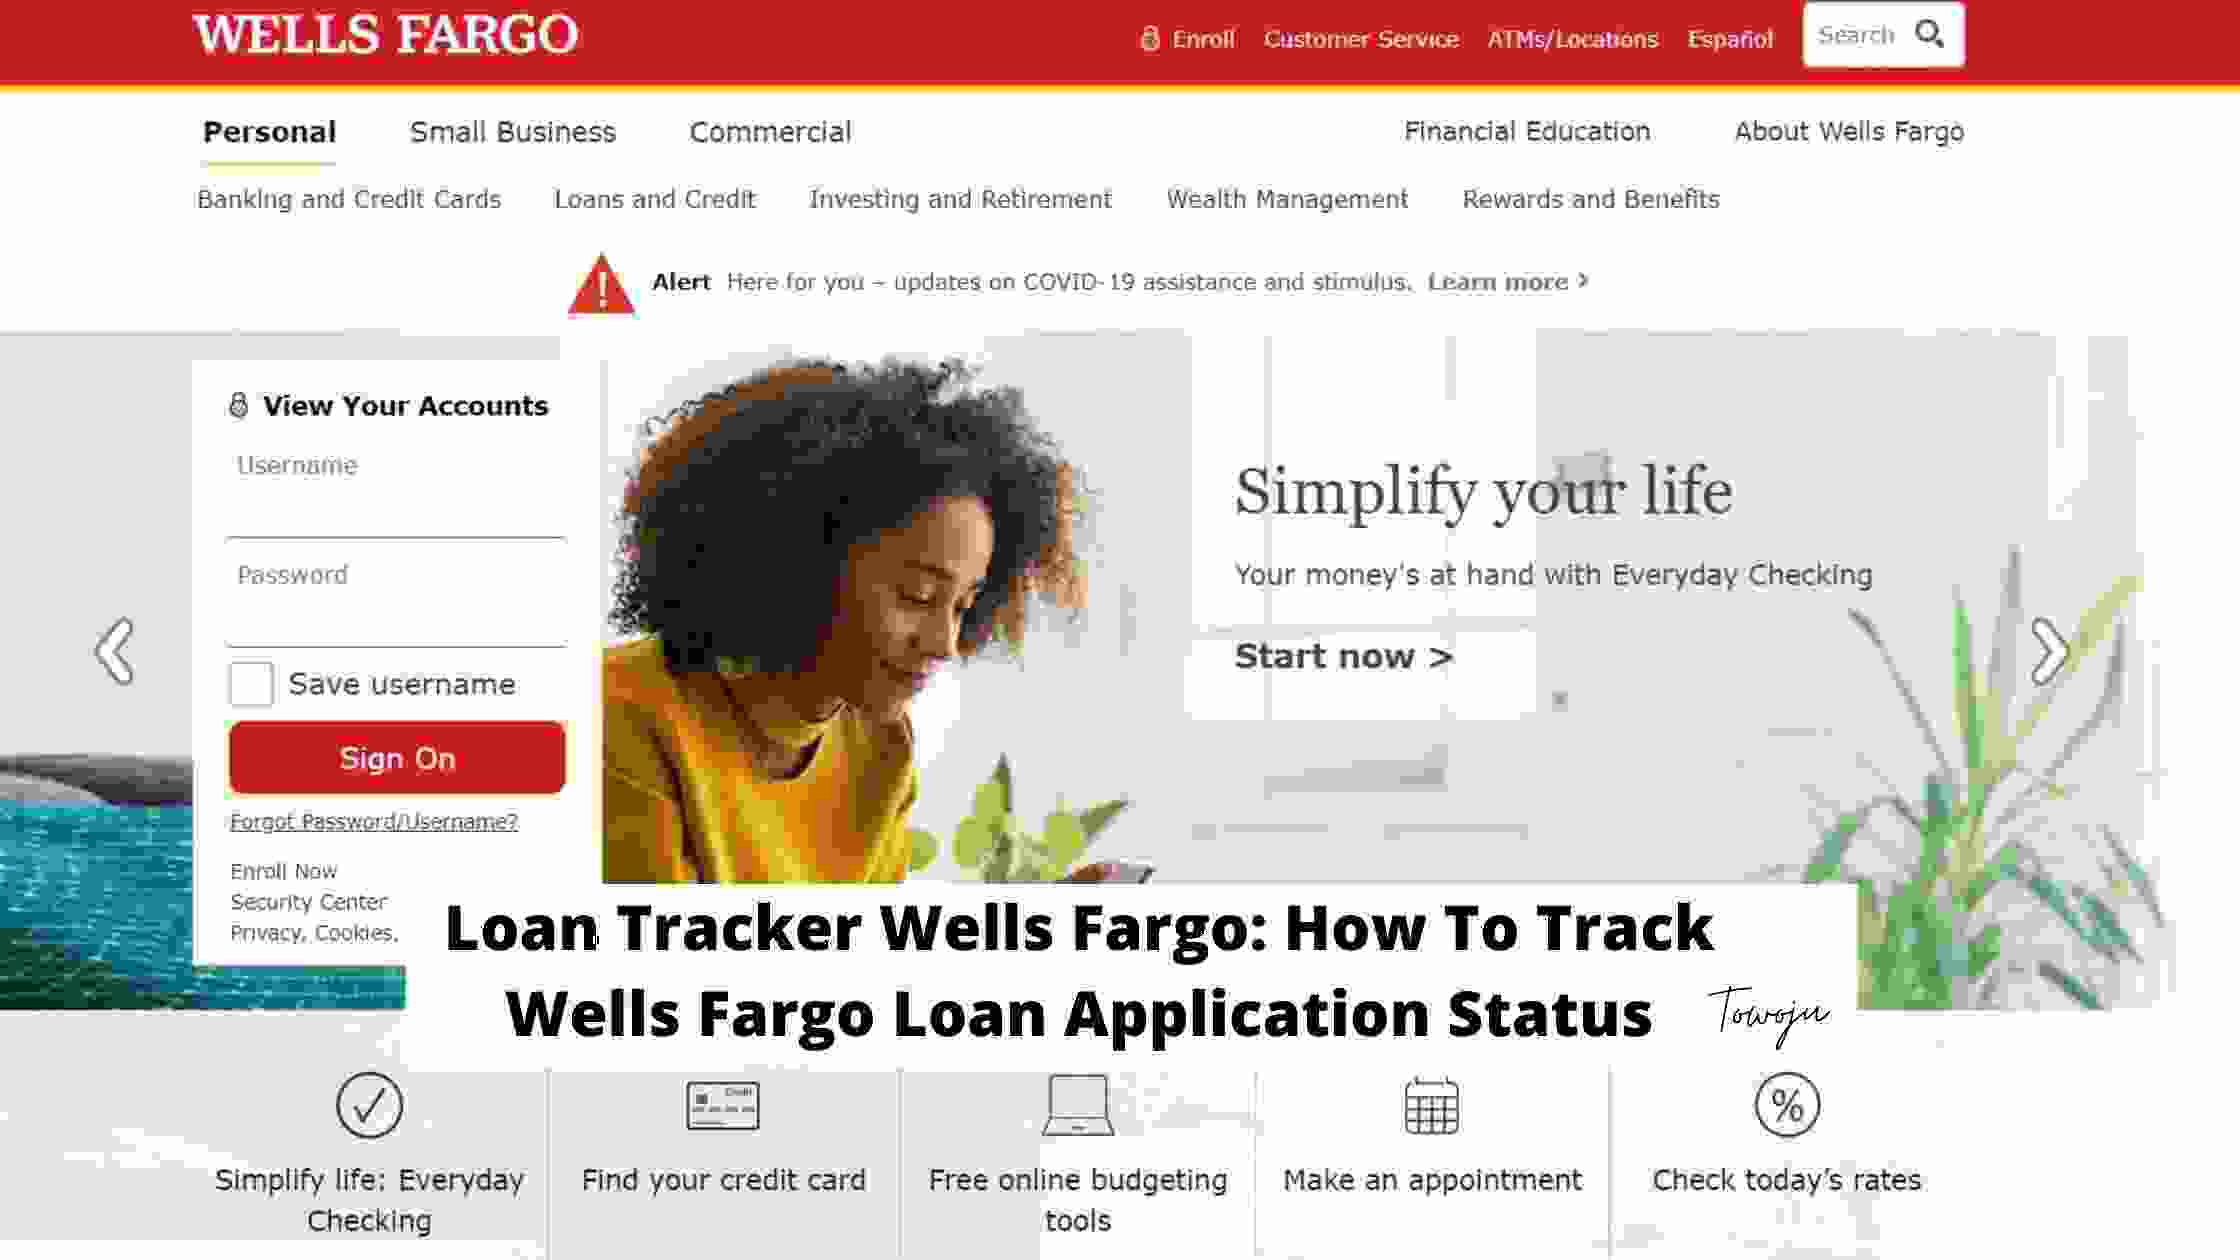 Loan Tracker Wells Fargo